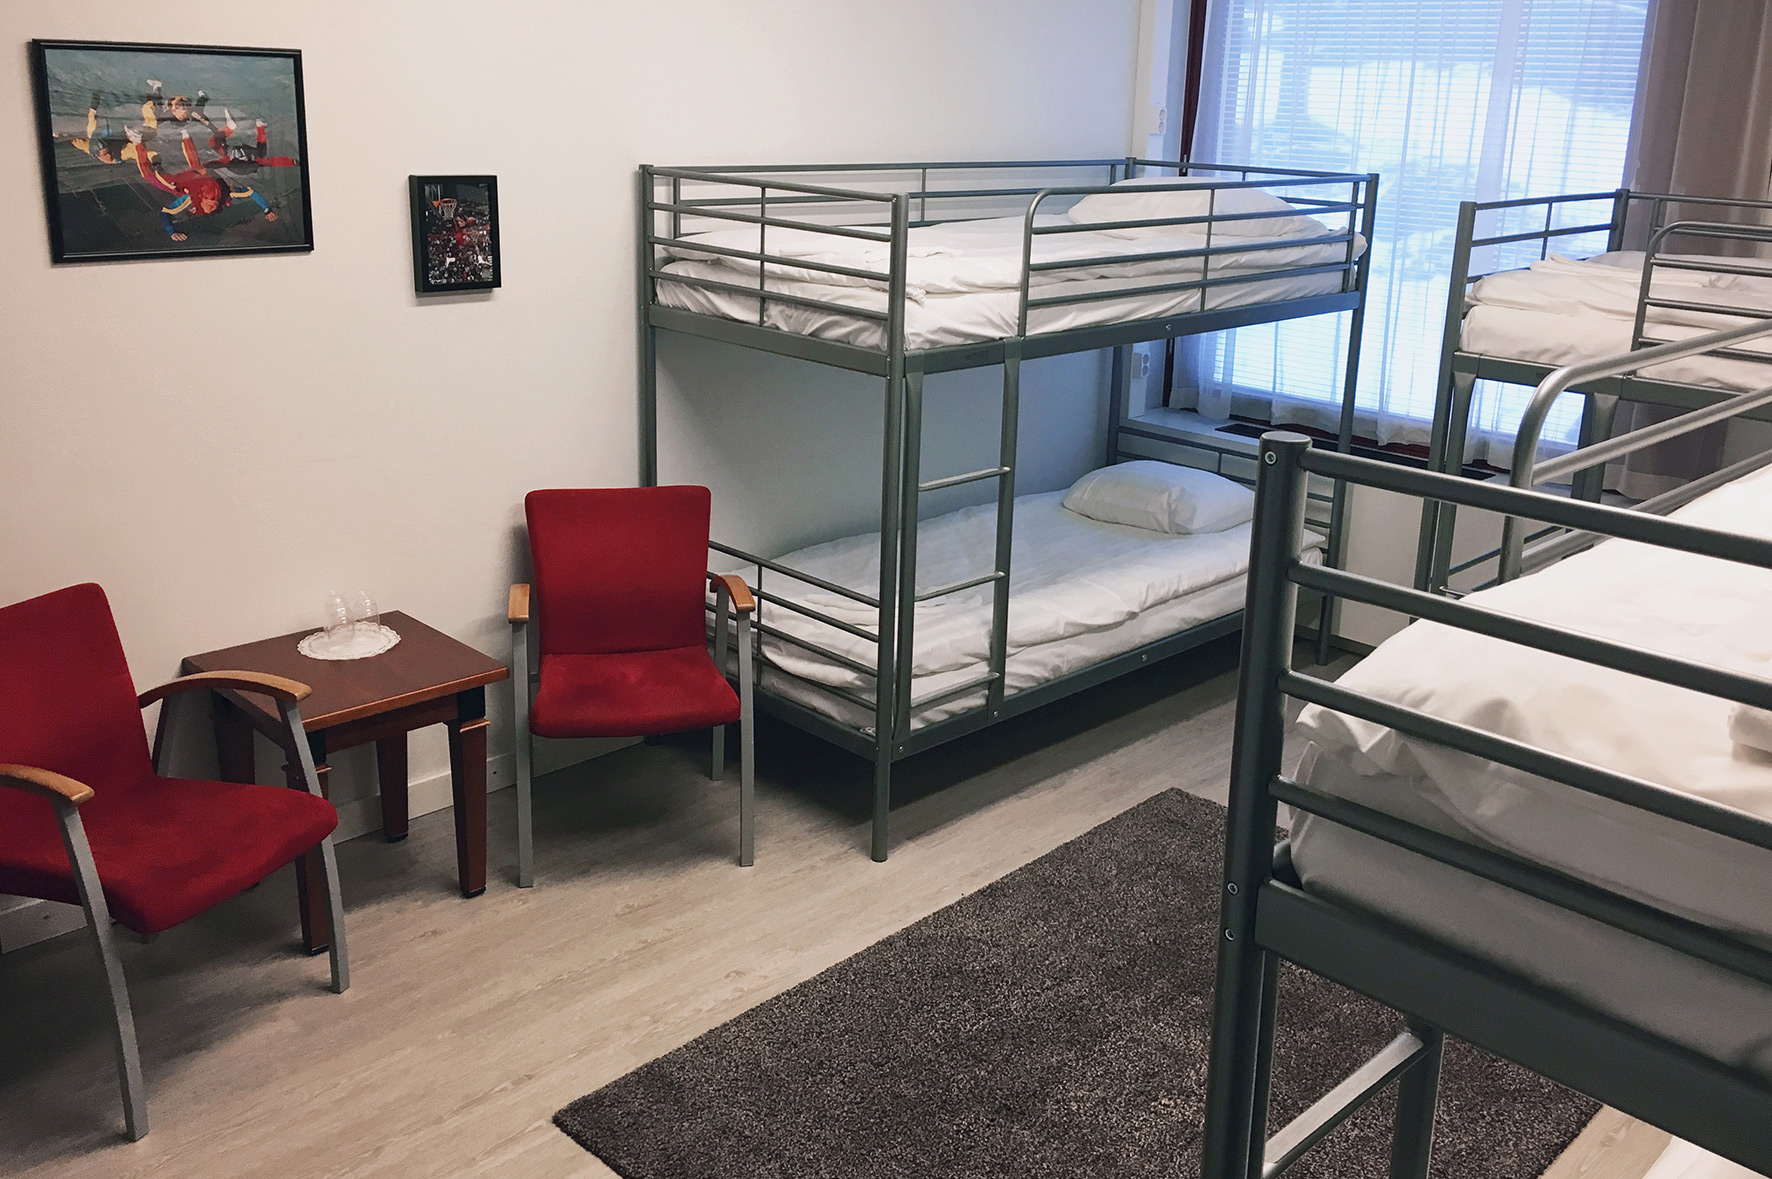 Hotel Korpilampi Espoo Helsinki Vantaa group accomodation dorm room